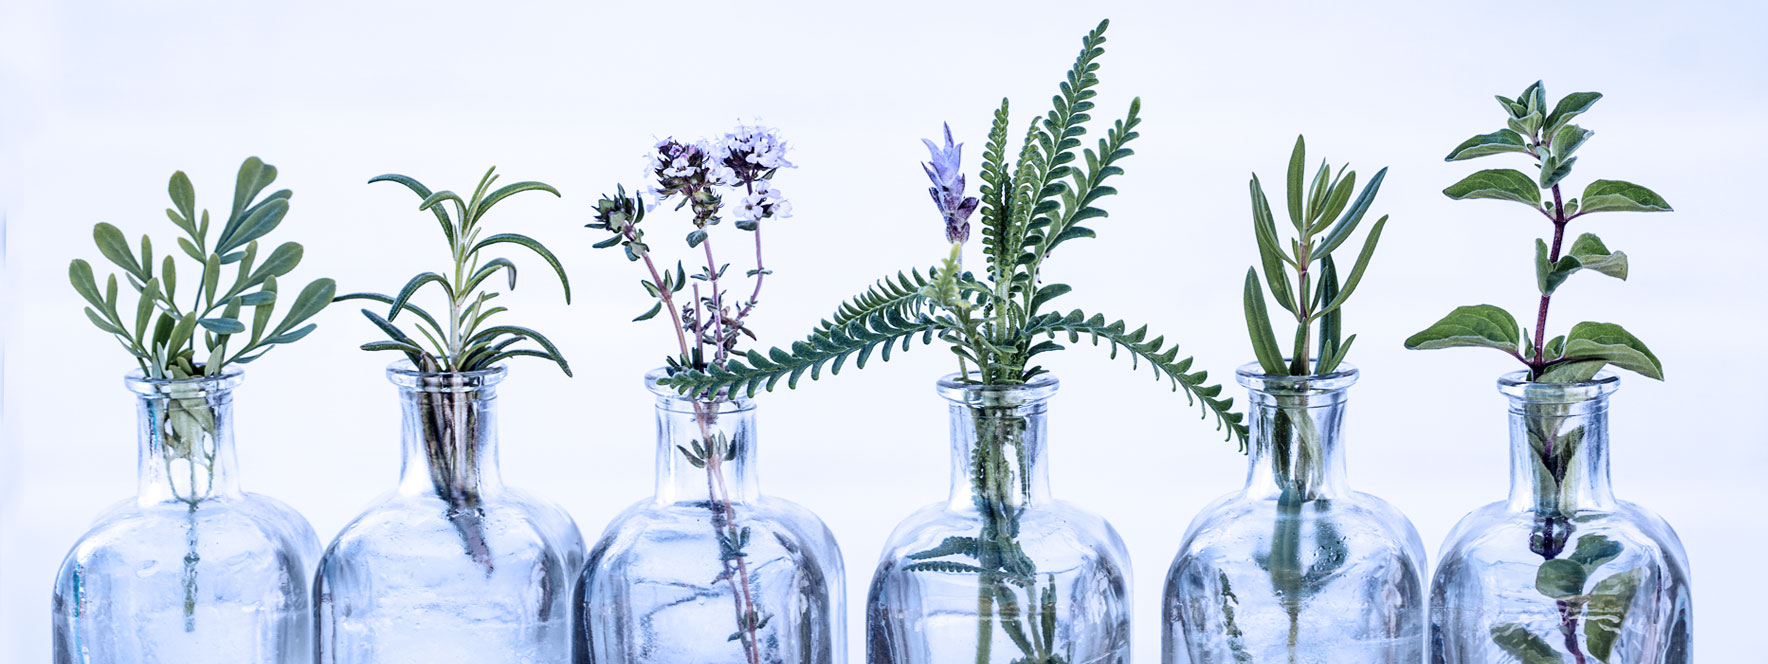 Variété de plantes dans des bouteilles en verre.